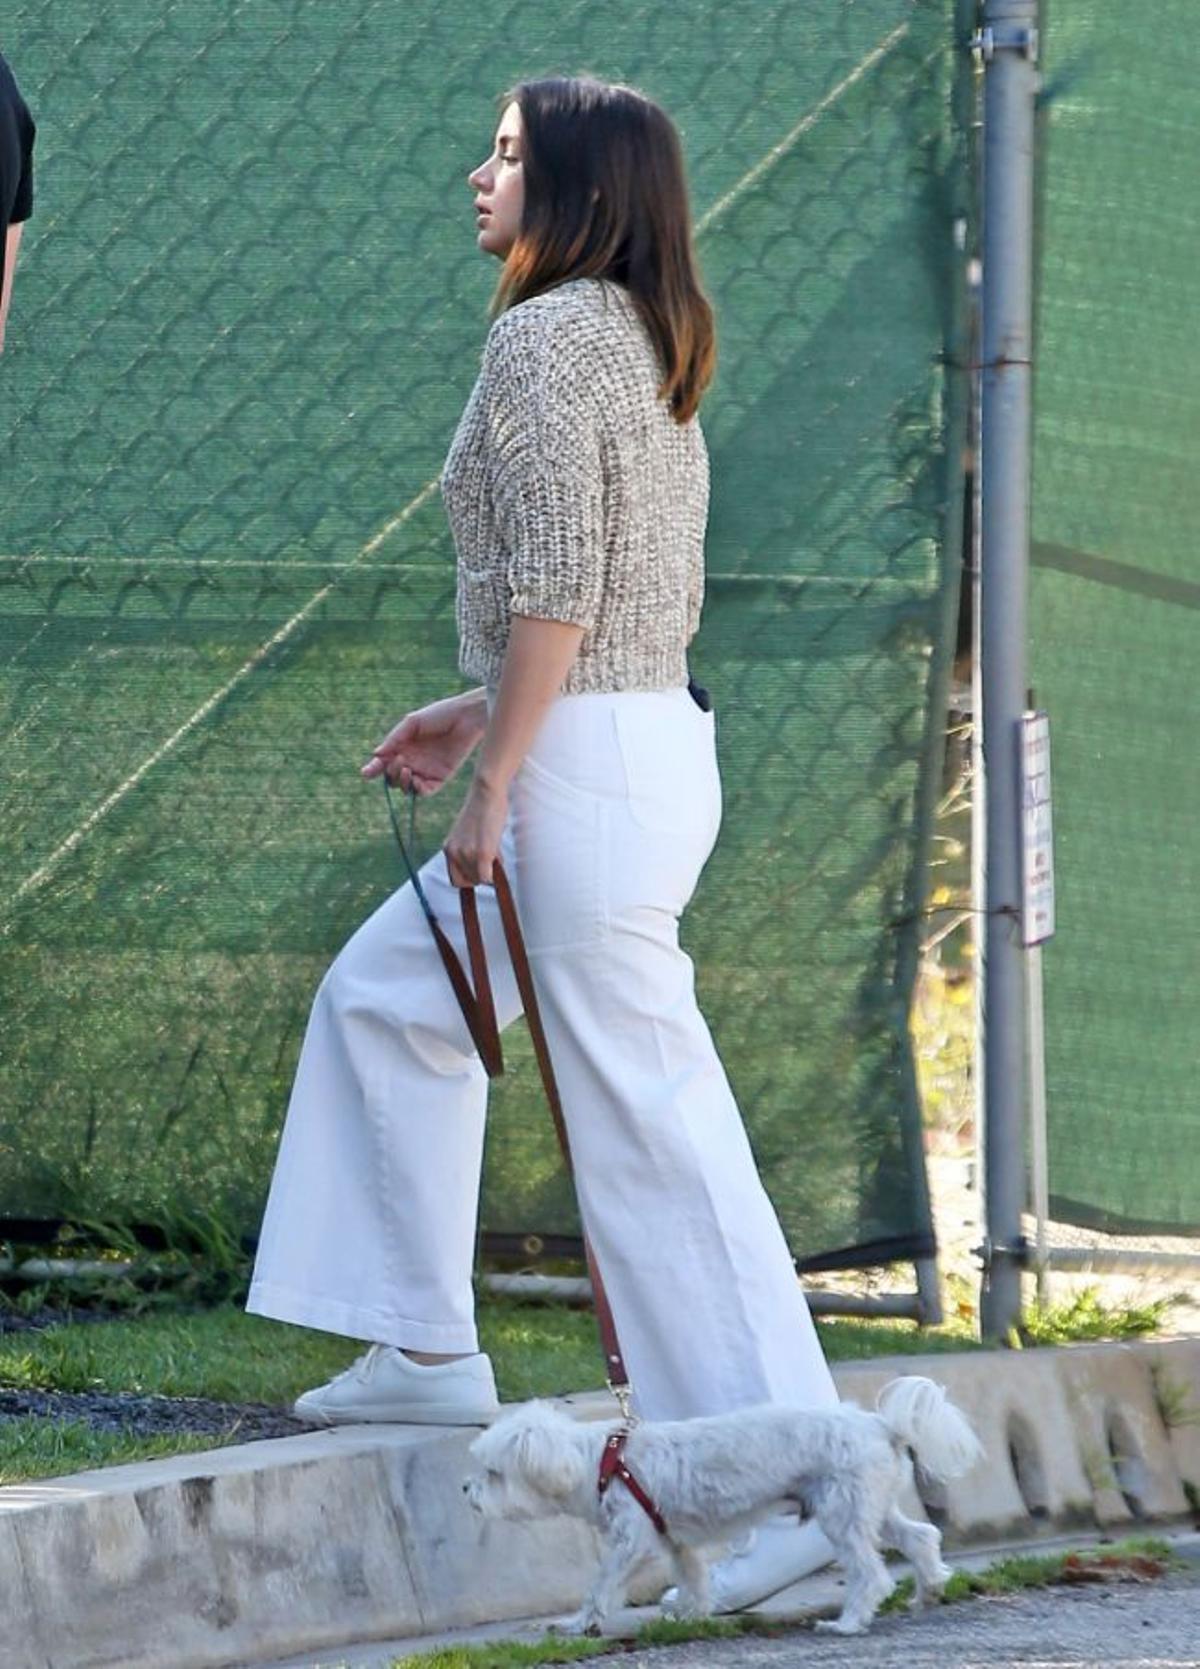 Si te dan miedo los pantalones culotte, Ana de Armas tiene los pantalones blancos anchos que favorecen a todas y disimulan tripa porque la cintura es muy alta